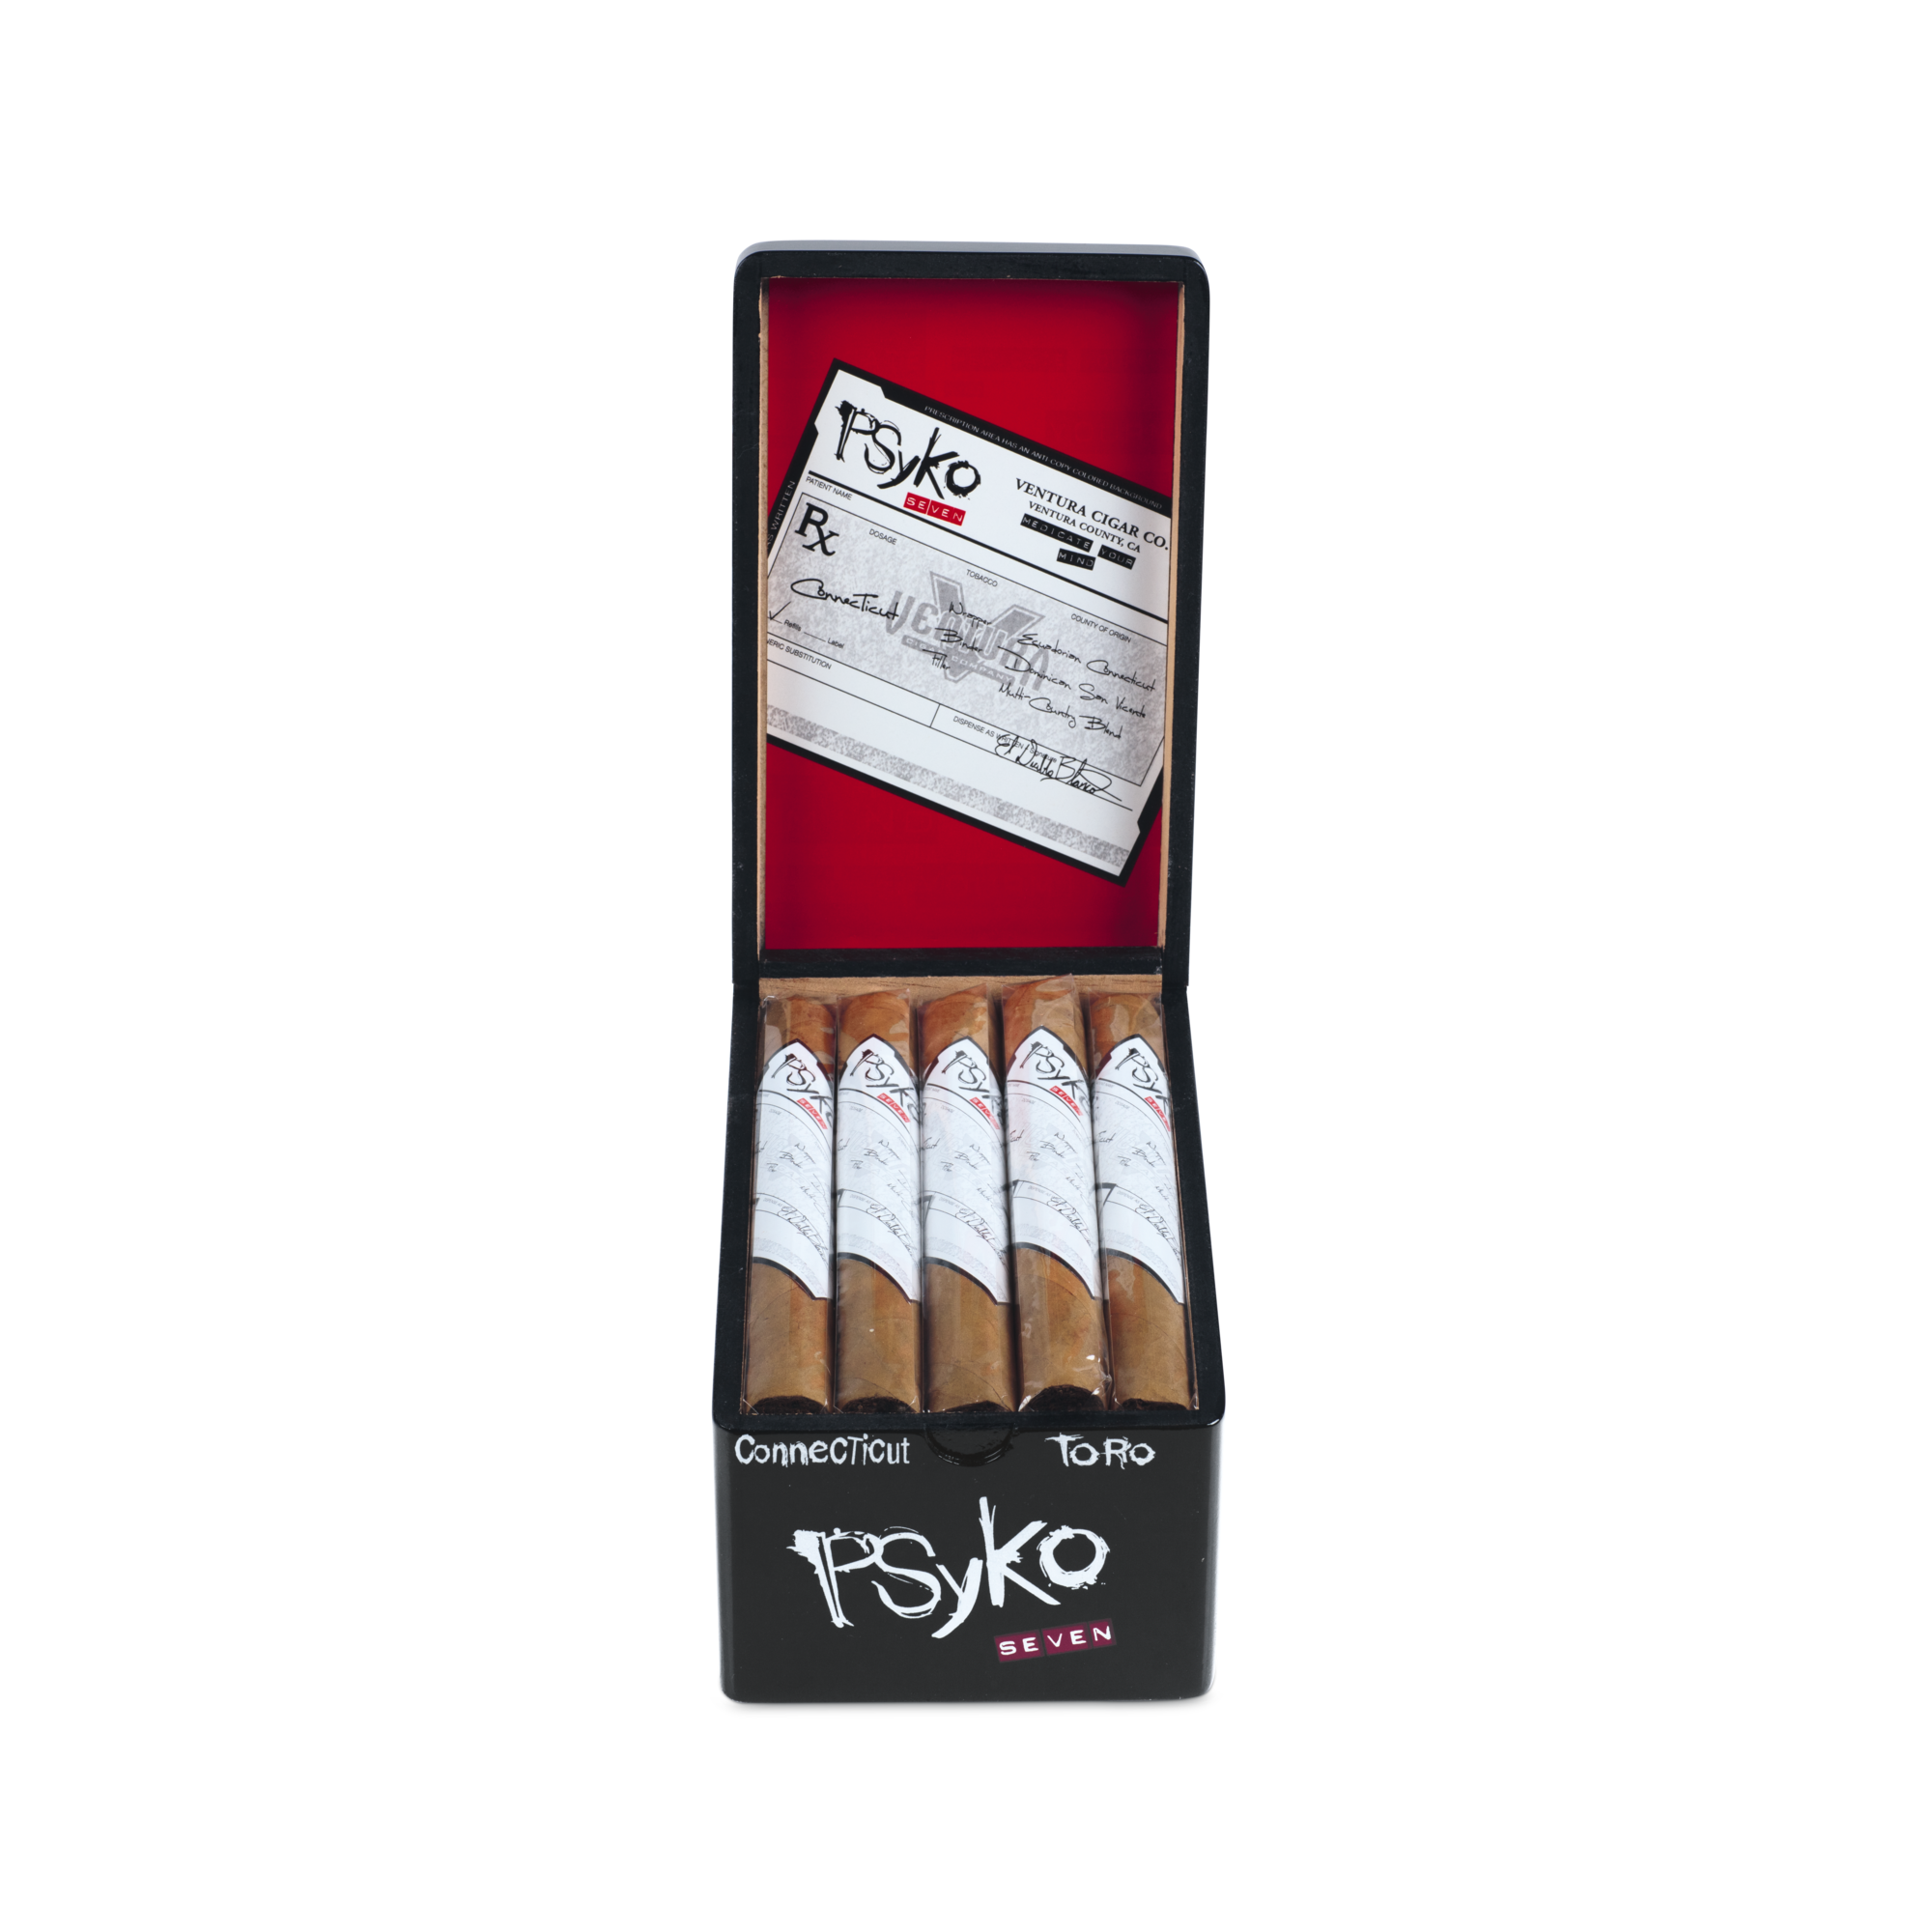 Psyko Seven Connecticut Toro Zigarren Box geöffnet